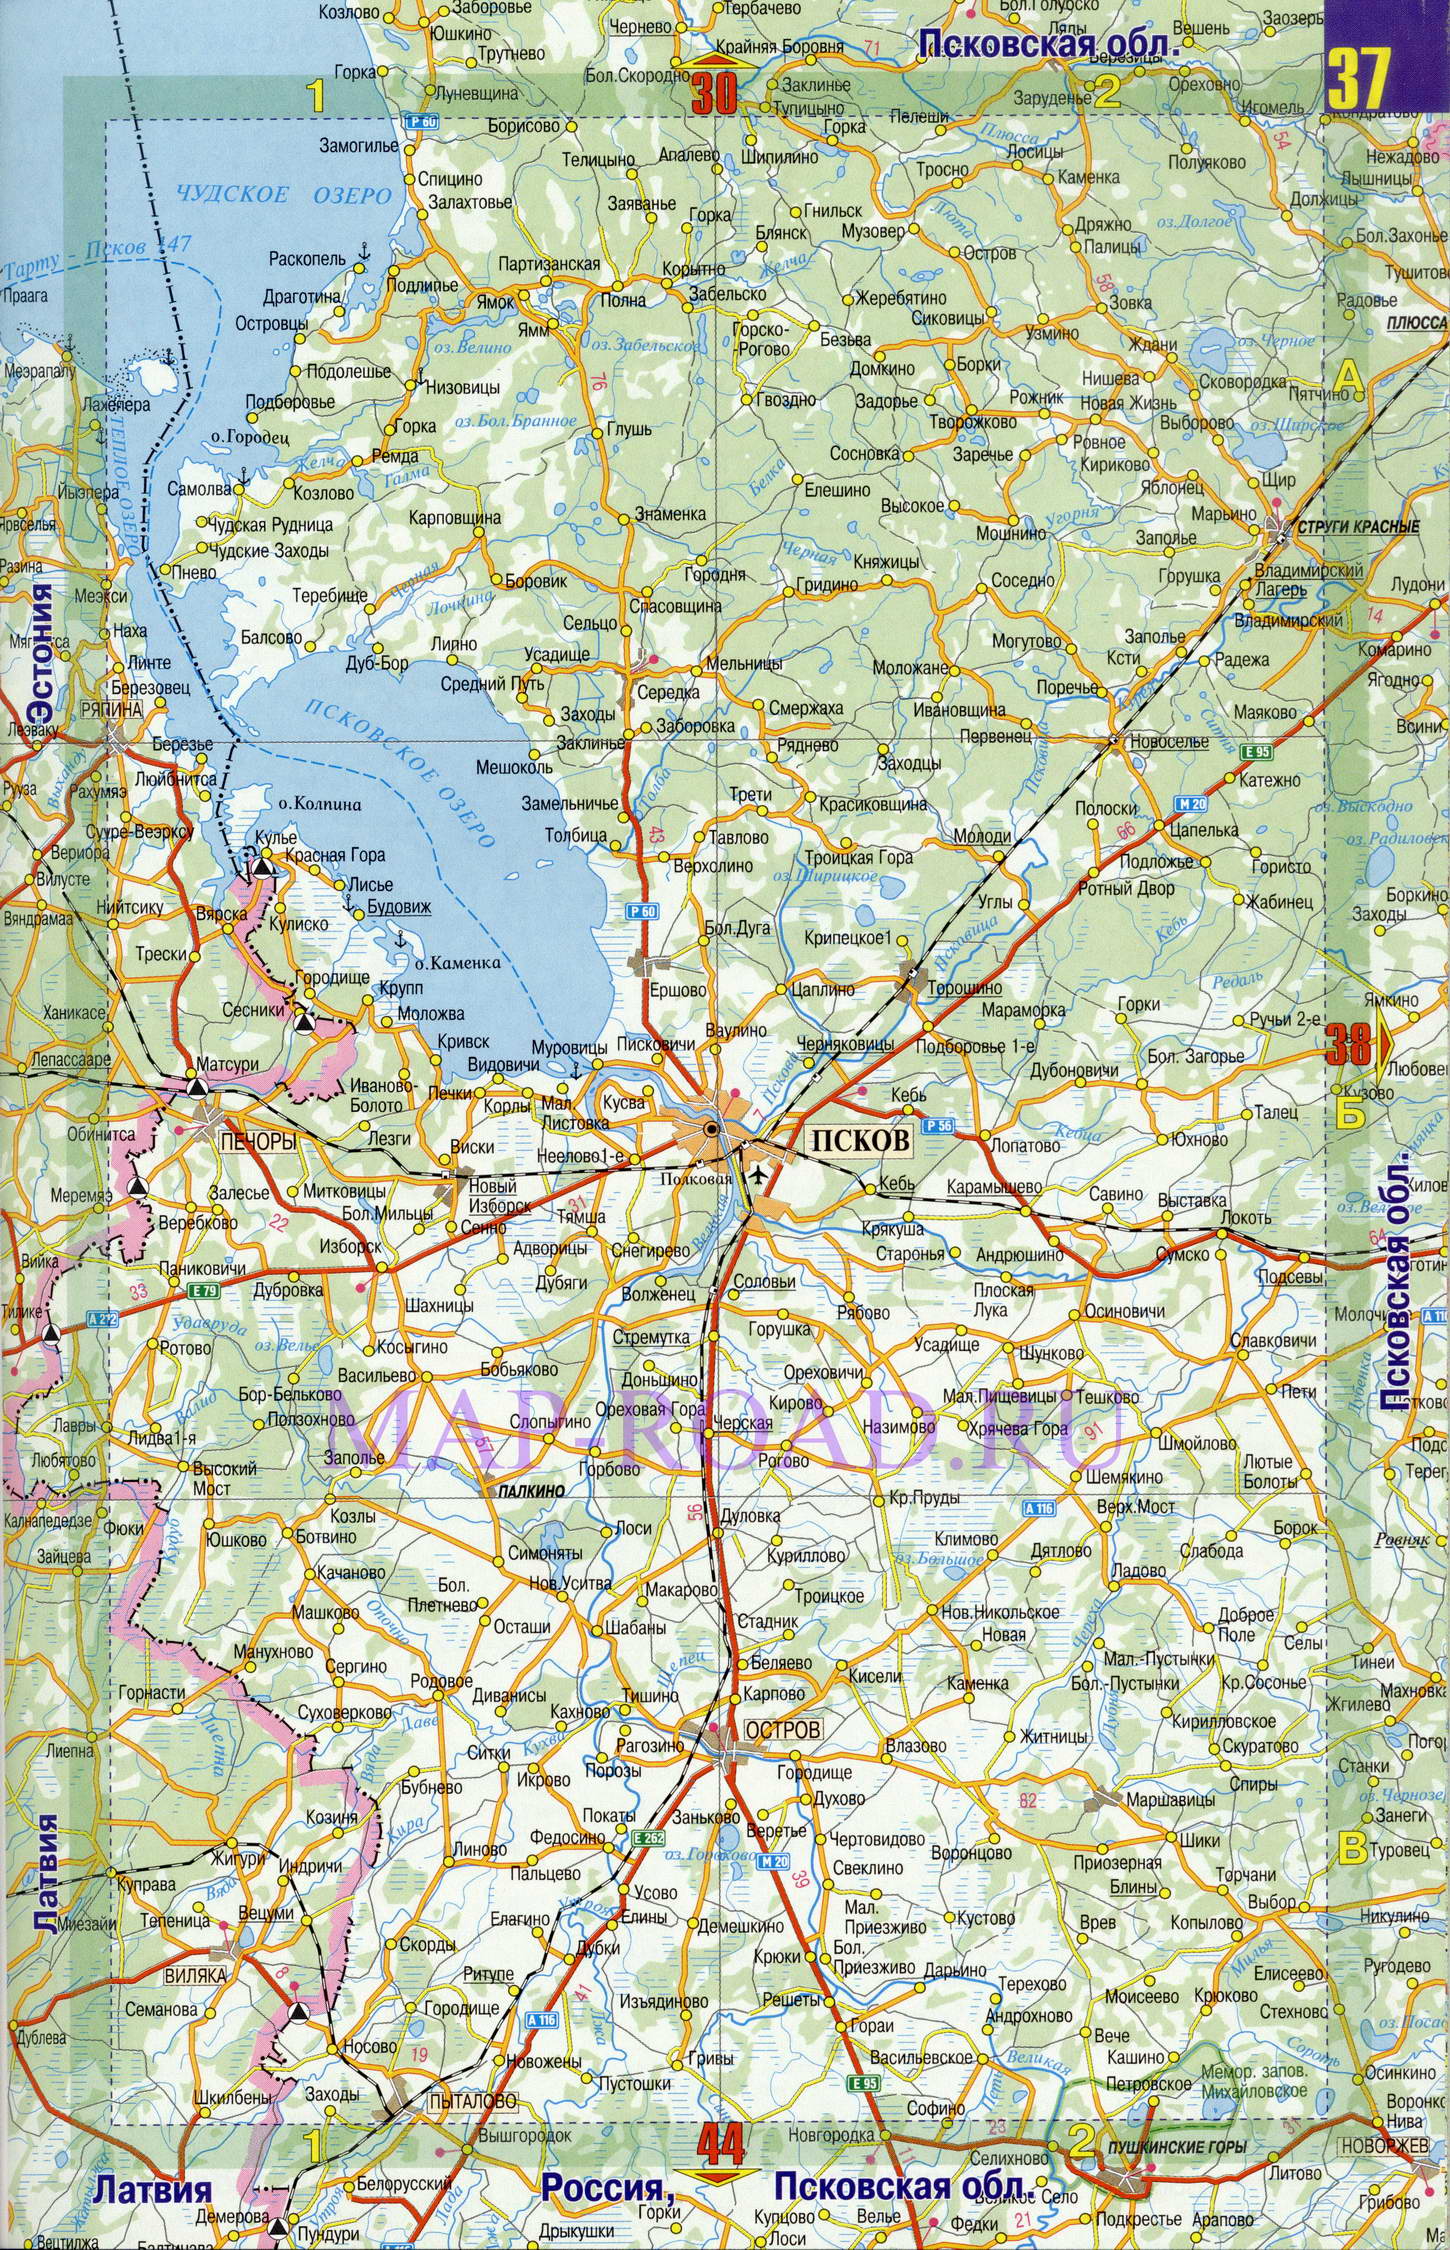 Подробная карта дорог Псковской области. Карта масштаба 1см:7км - Псковская область, A0 - 